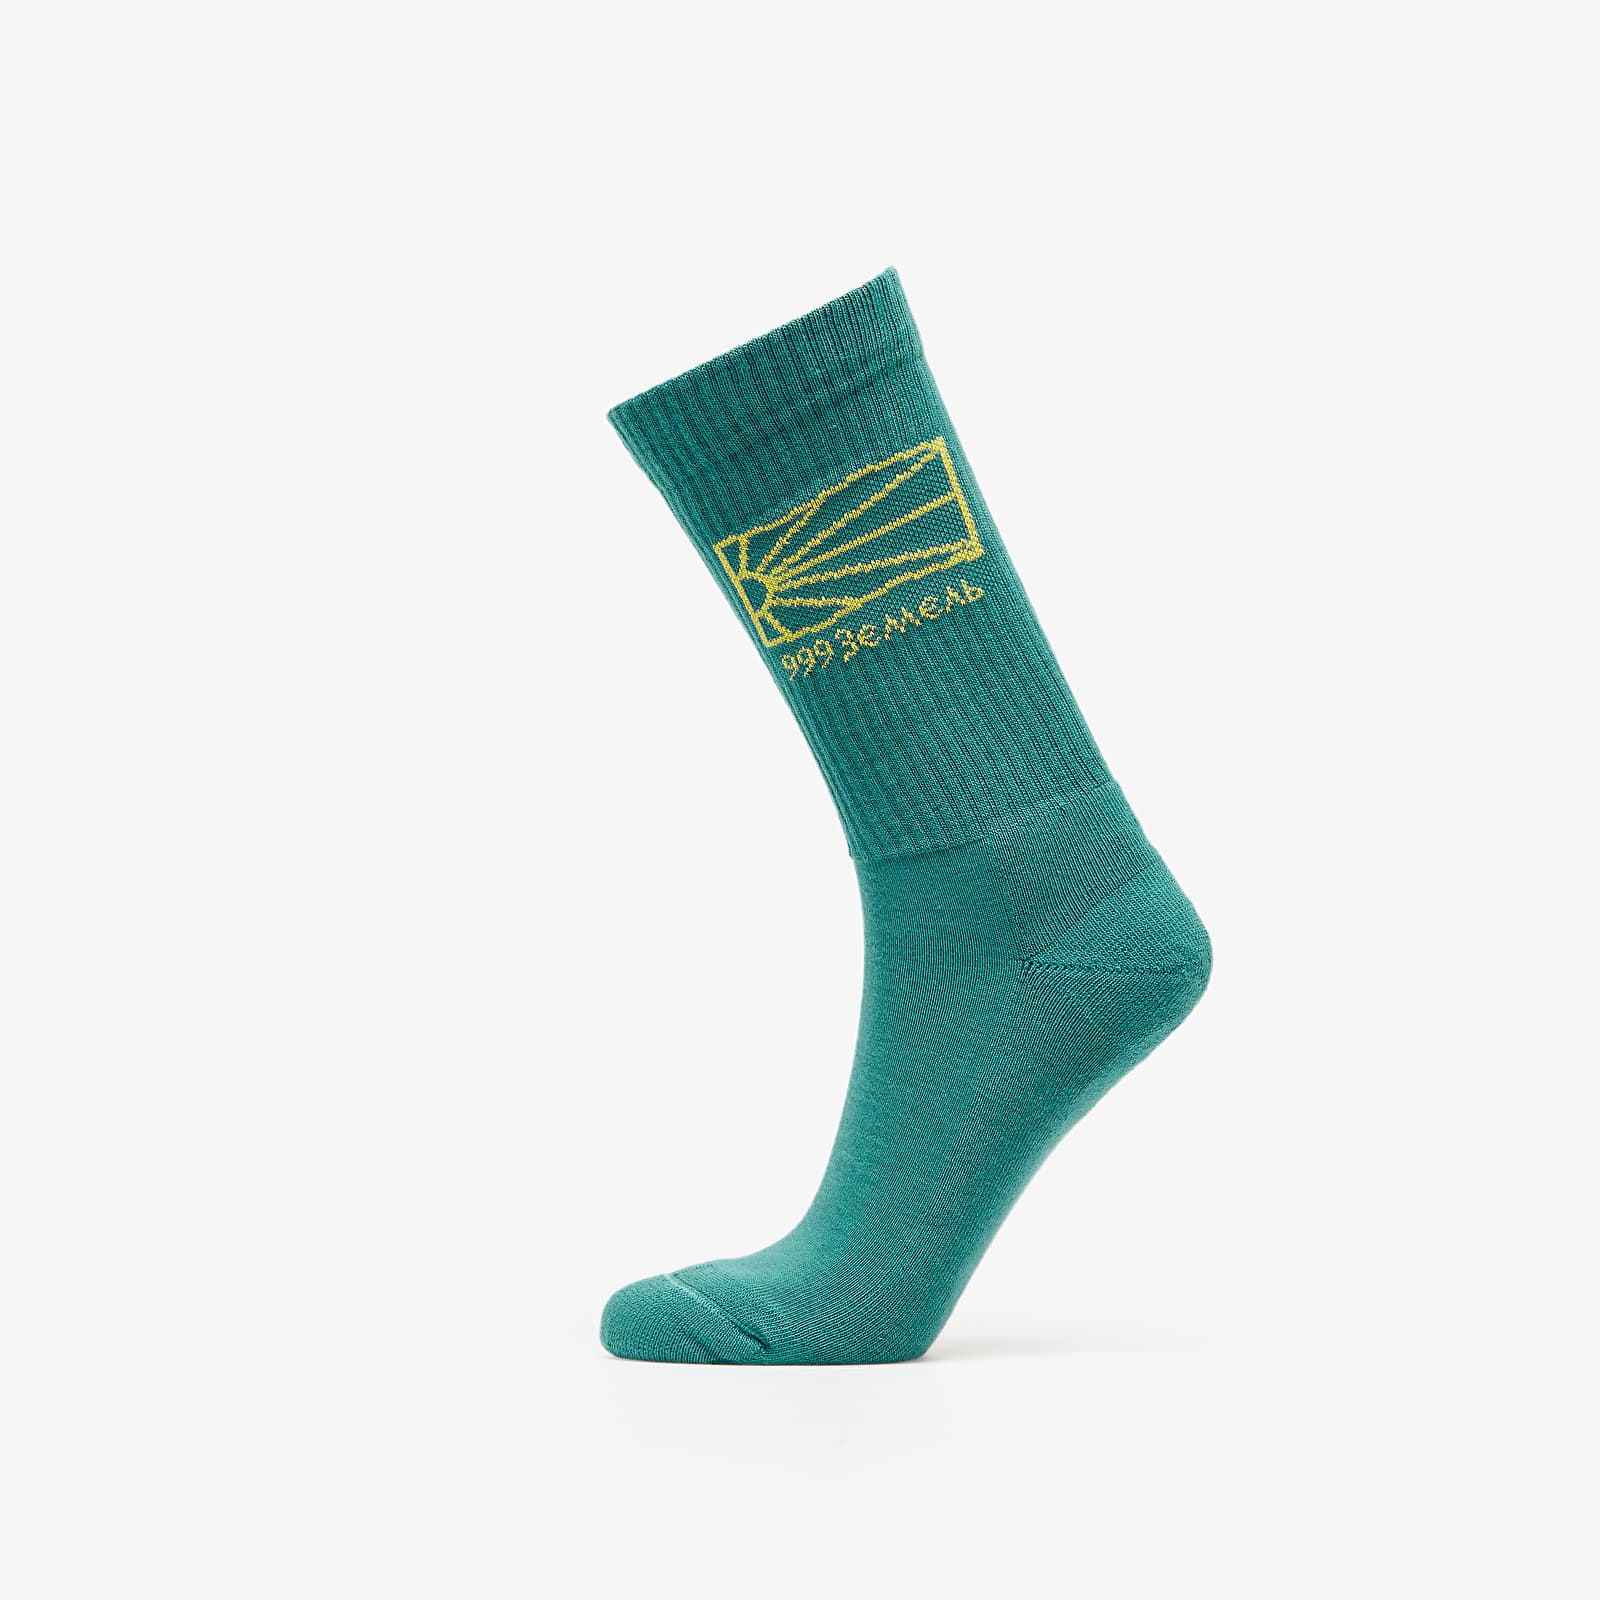 Чорапи PACCBET Cotton Socks Knit Turquoise 950170